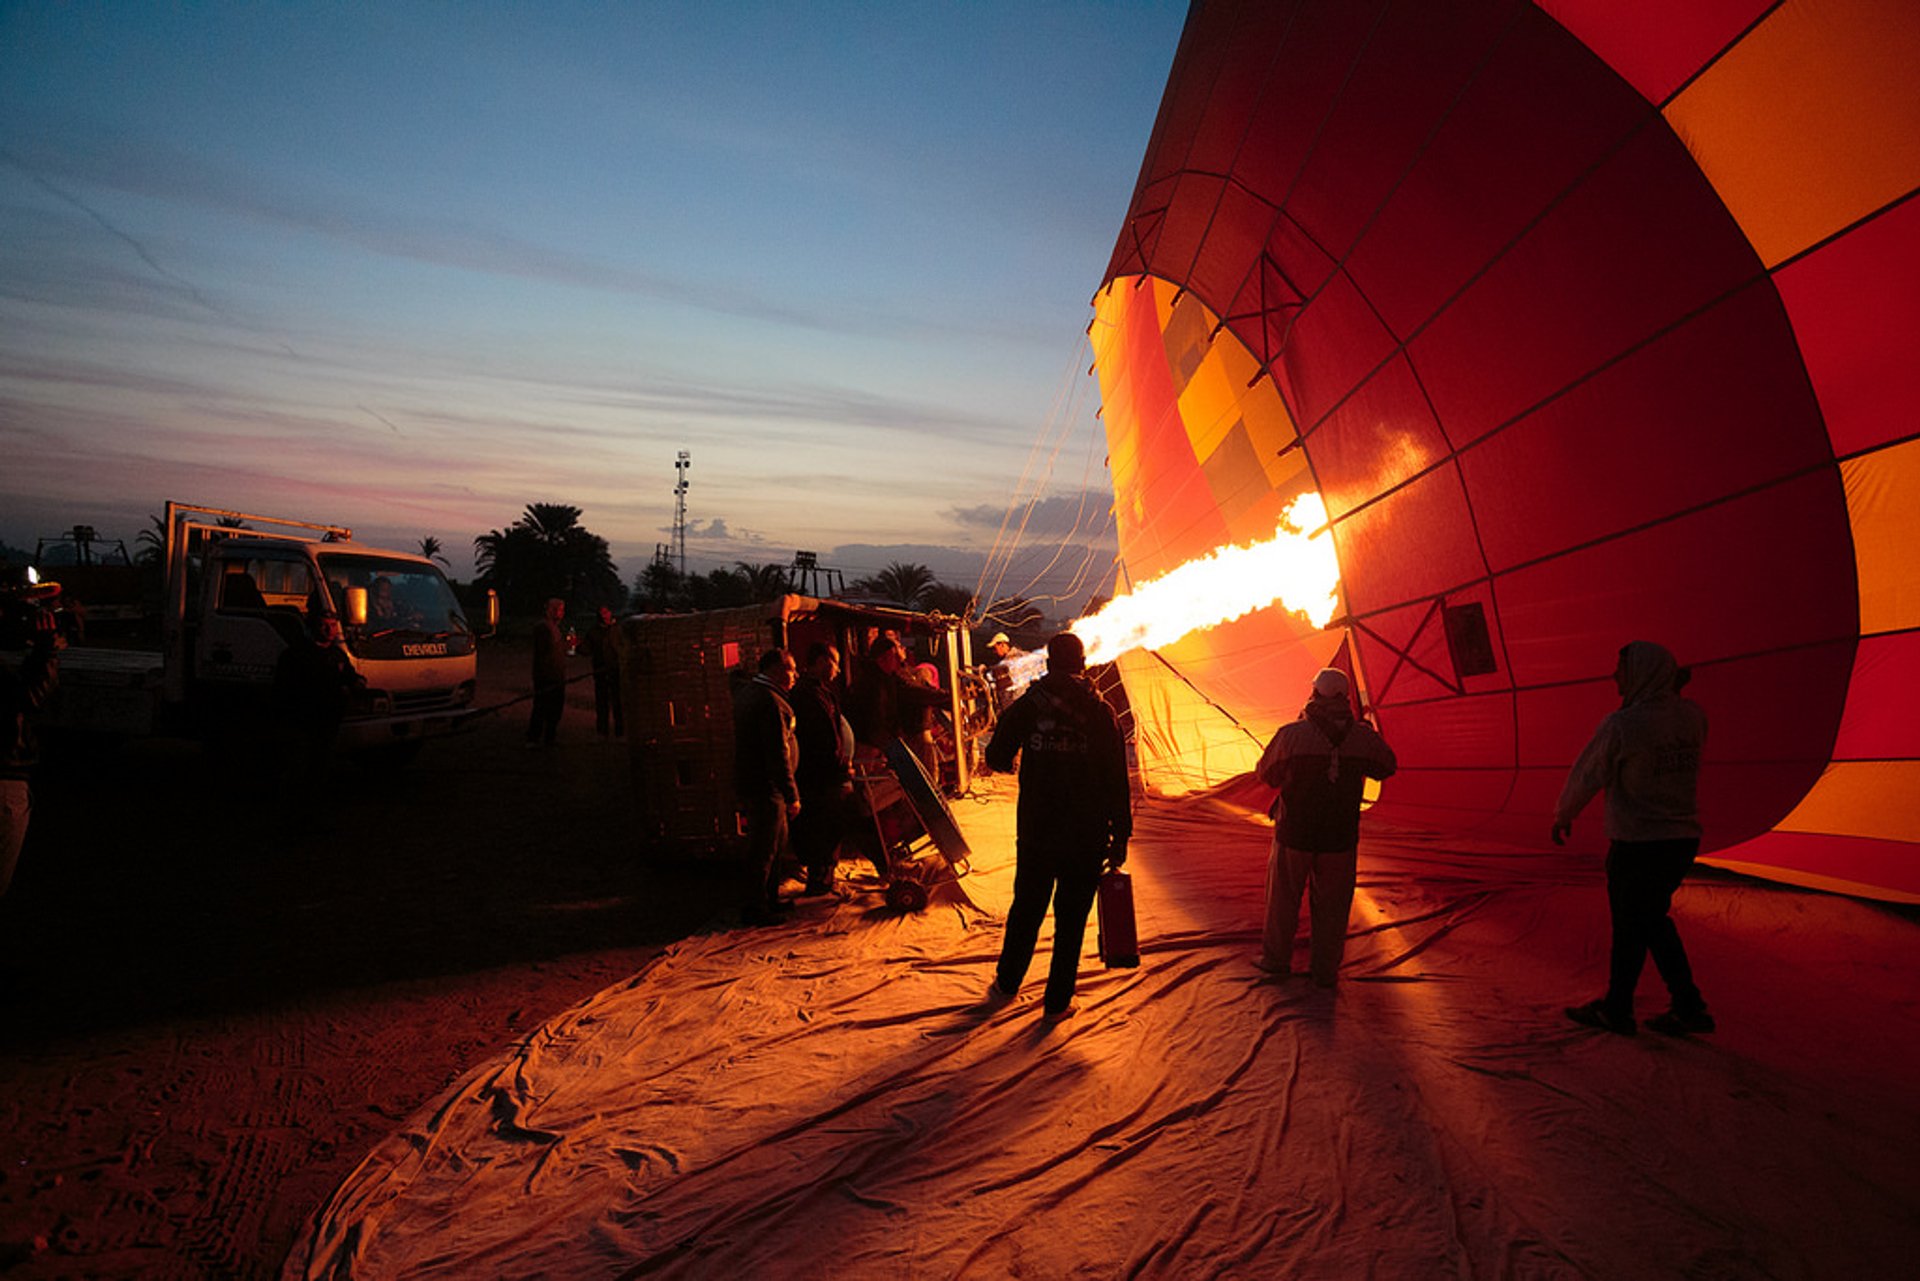 Festival de balão de ar quente em Luxor